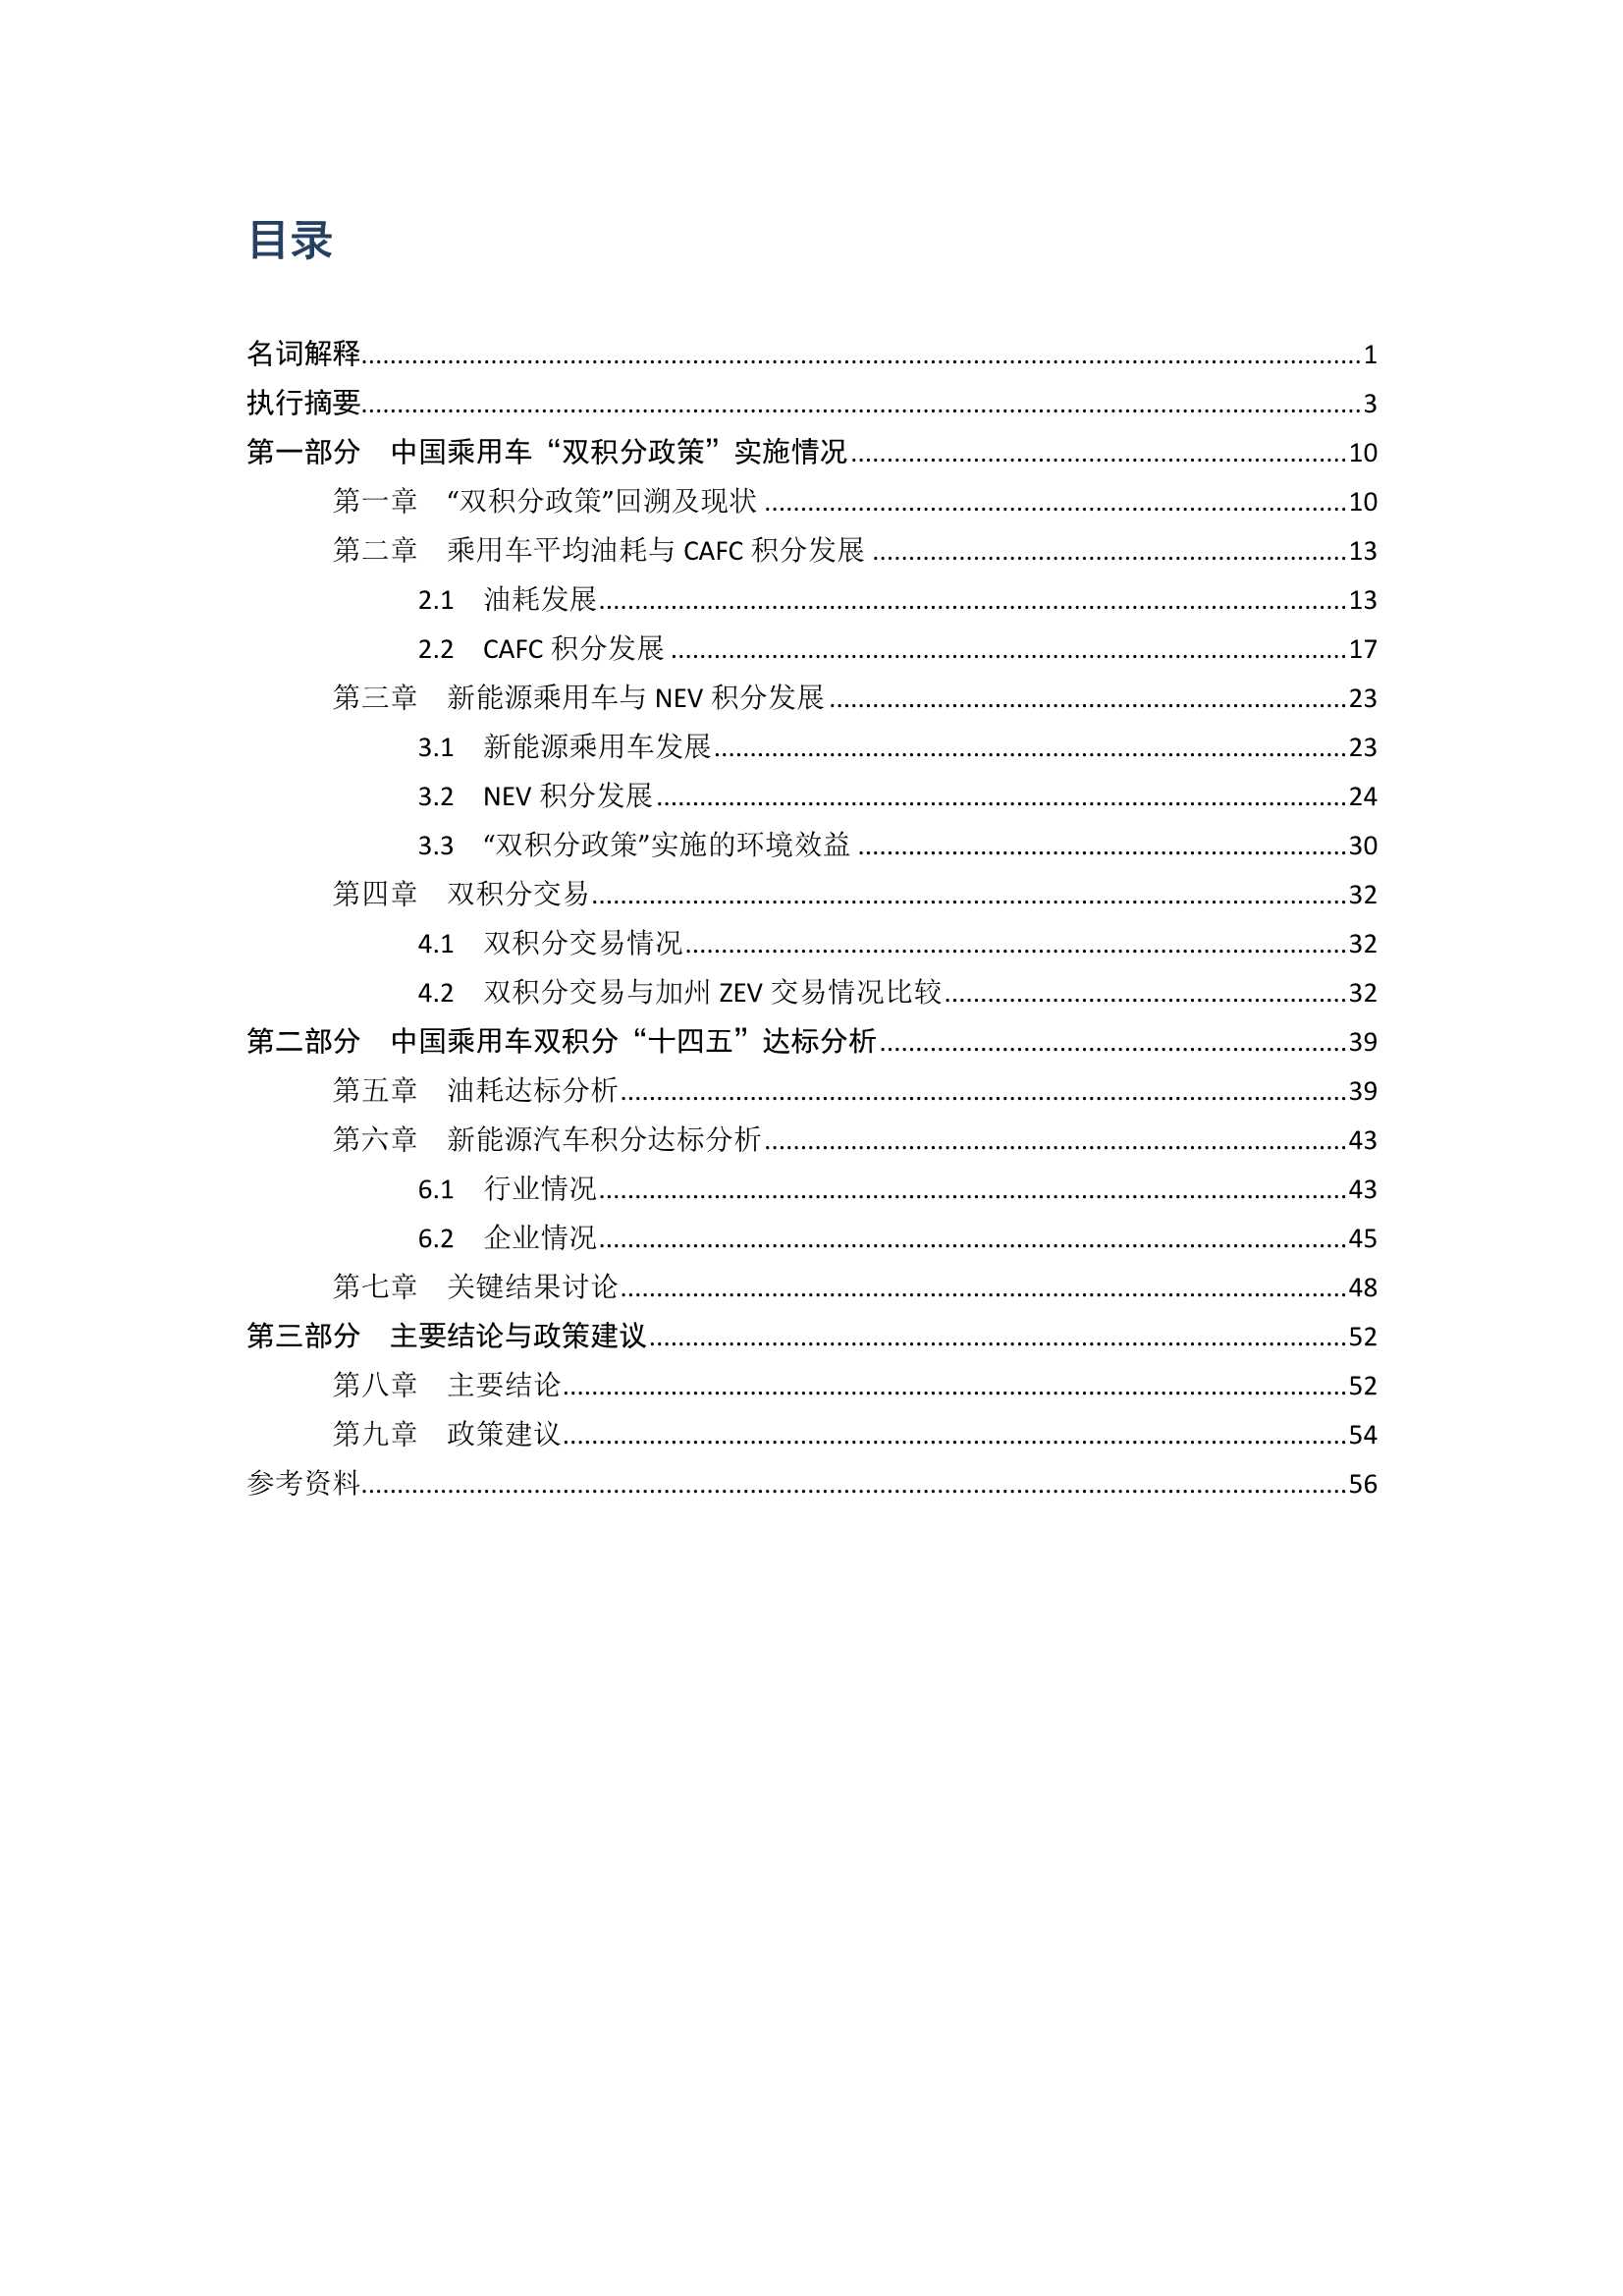 iCET-2021中国乘用车双积分研究报告-2022.01-59页